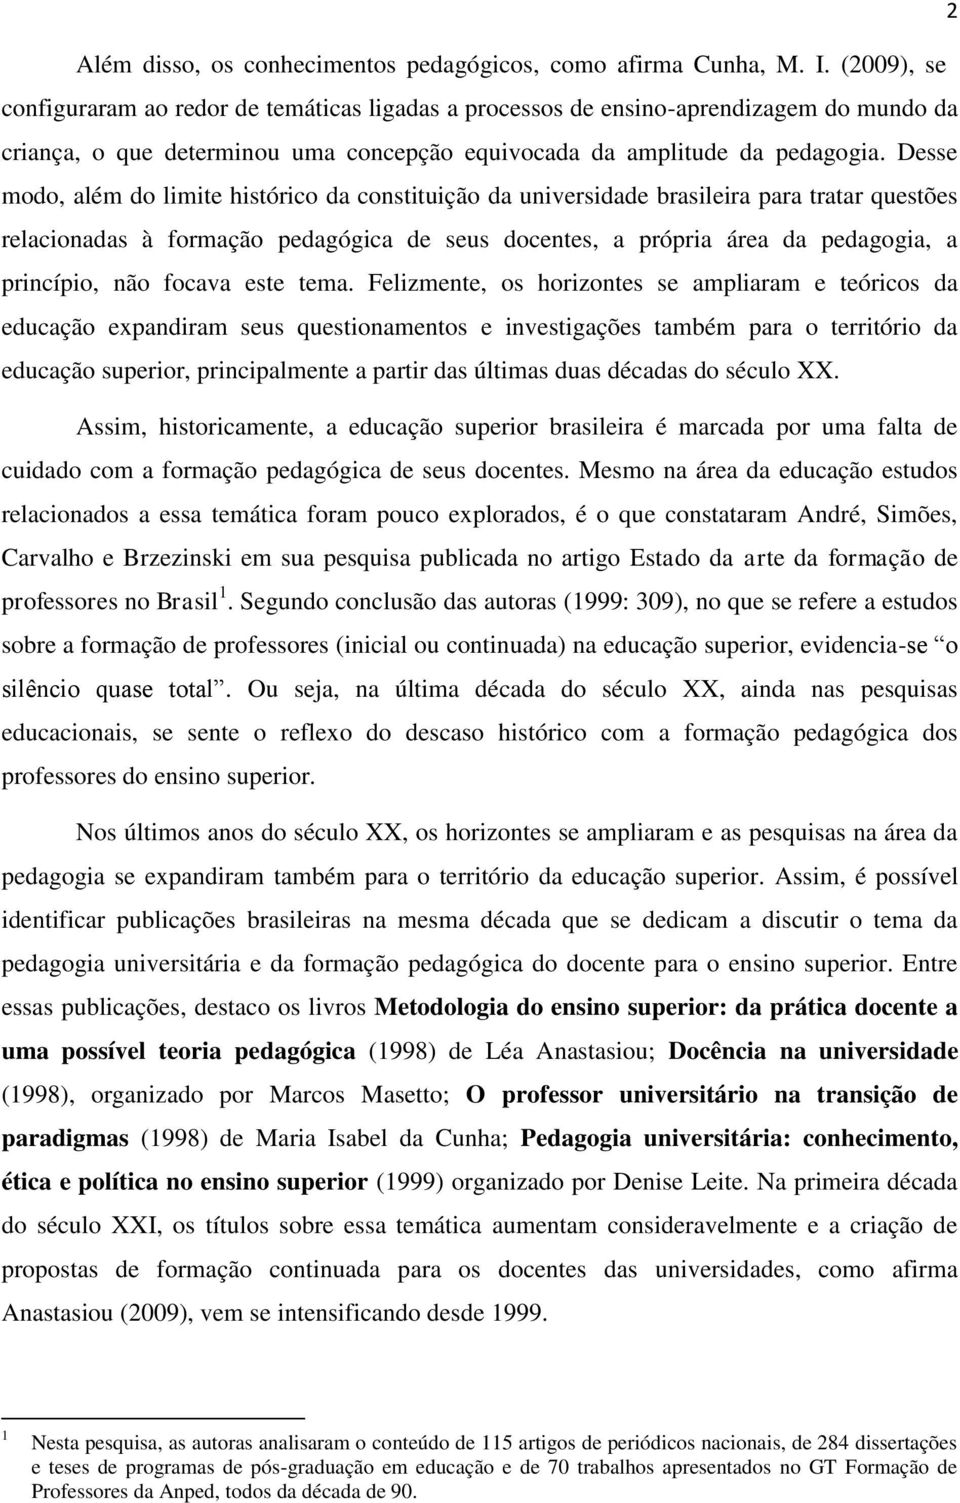 Desse modo, além do limite histórico da constituição da universidade brasileira para tratar questões relacionadas à formação pedagógica de seus docentes, a própria área da pedagogia, a princípio, não